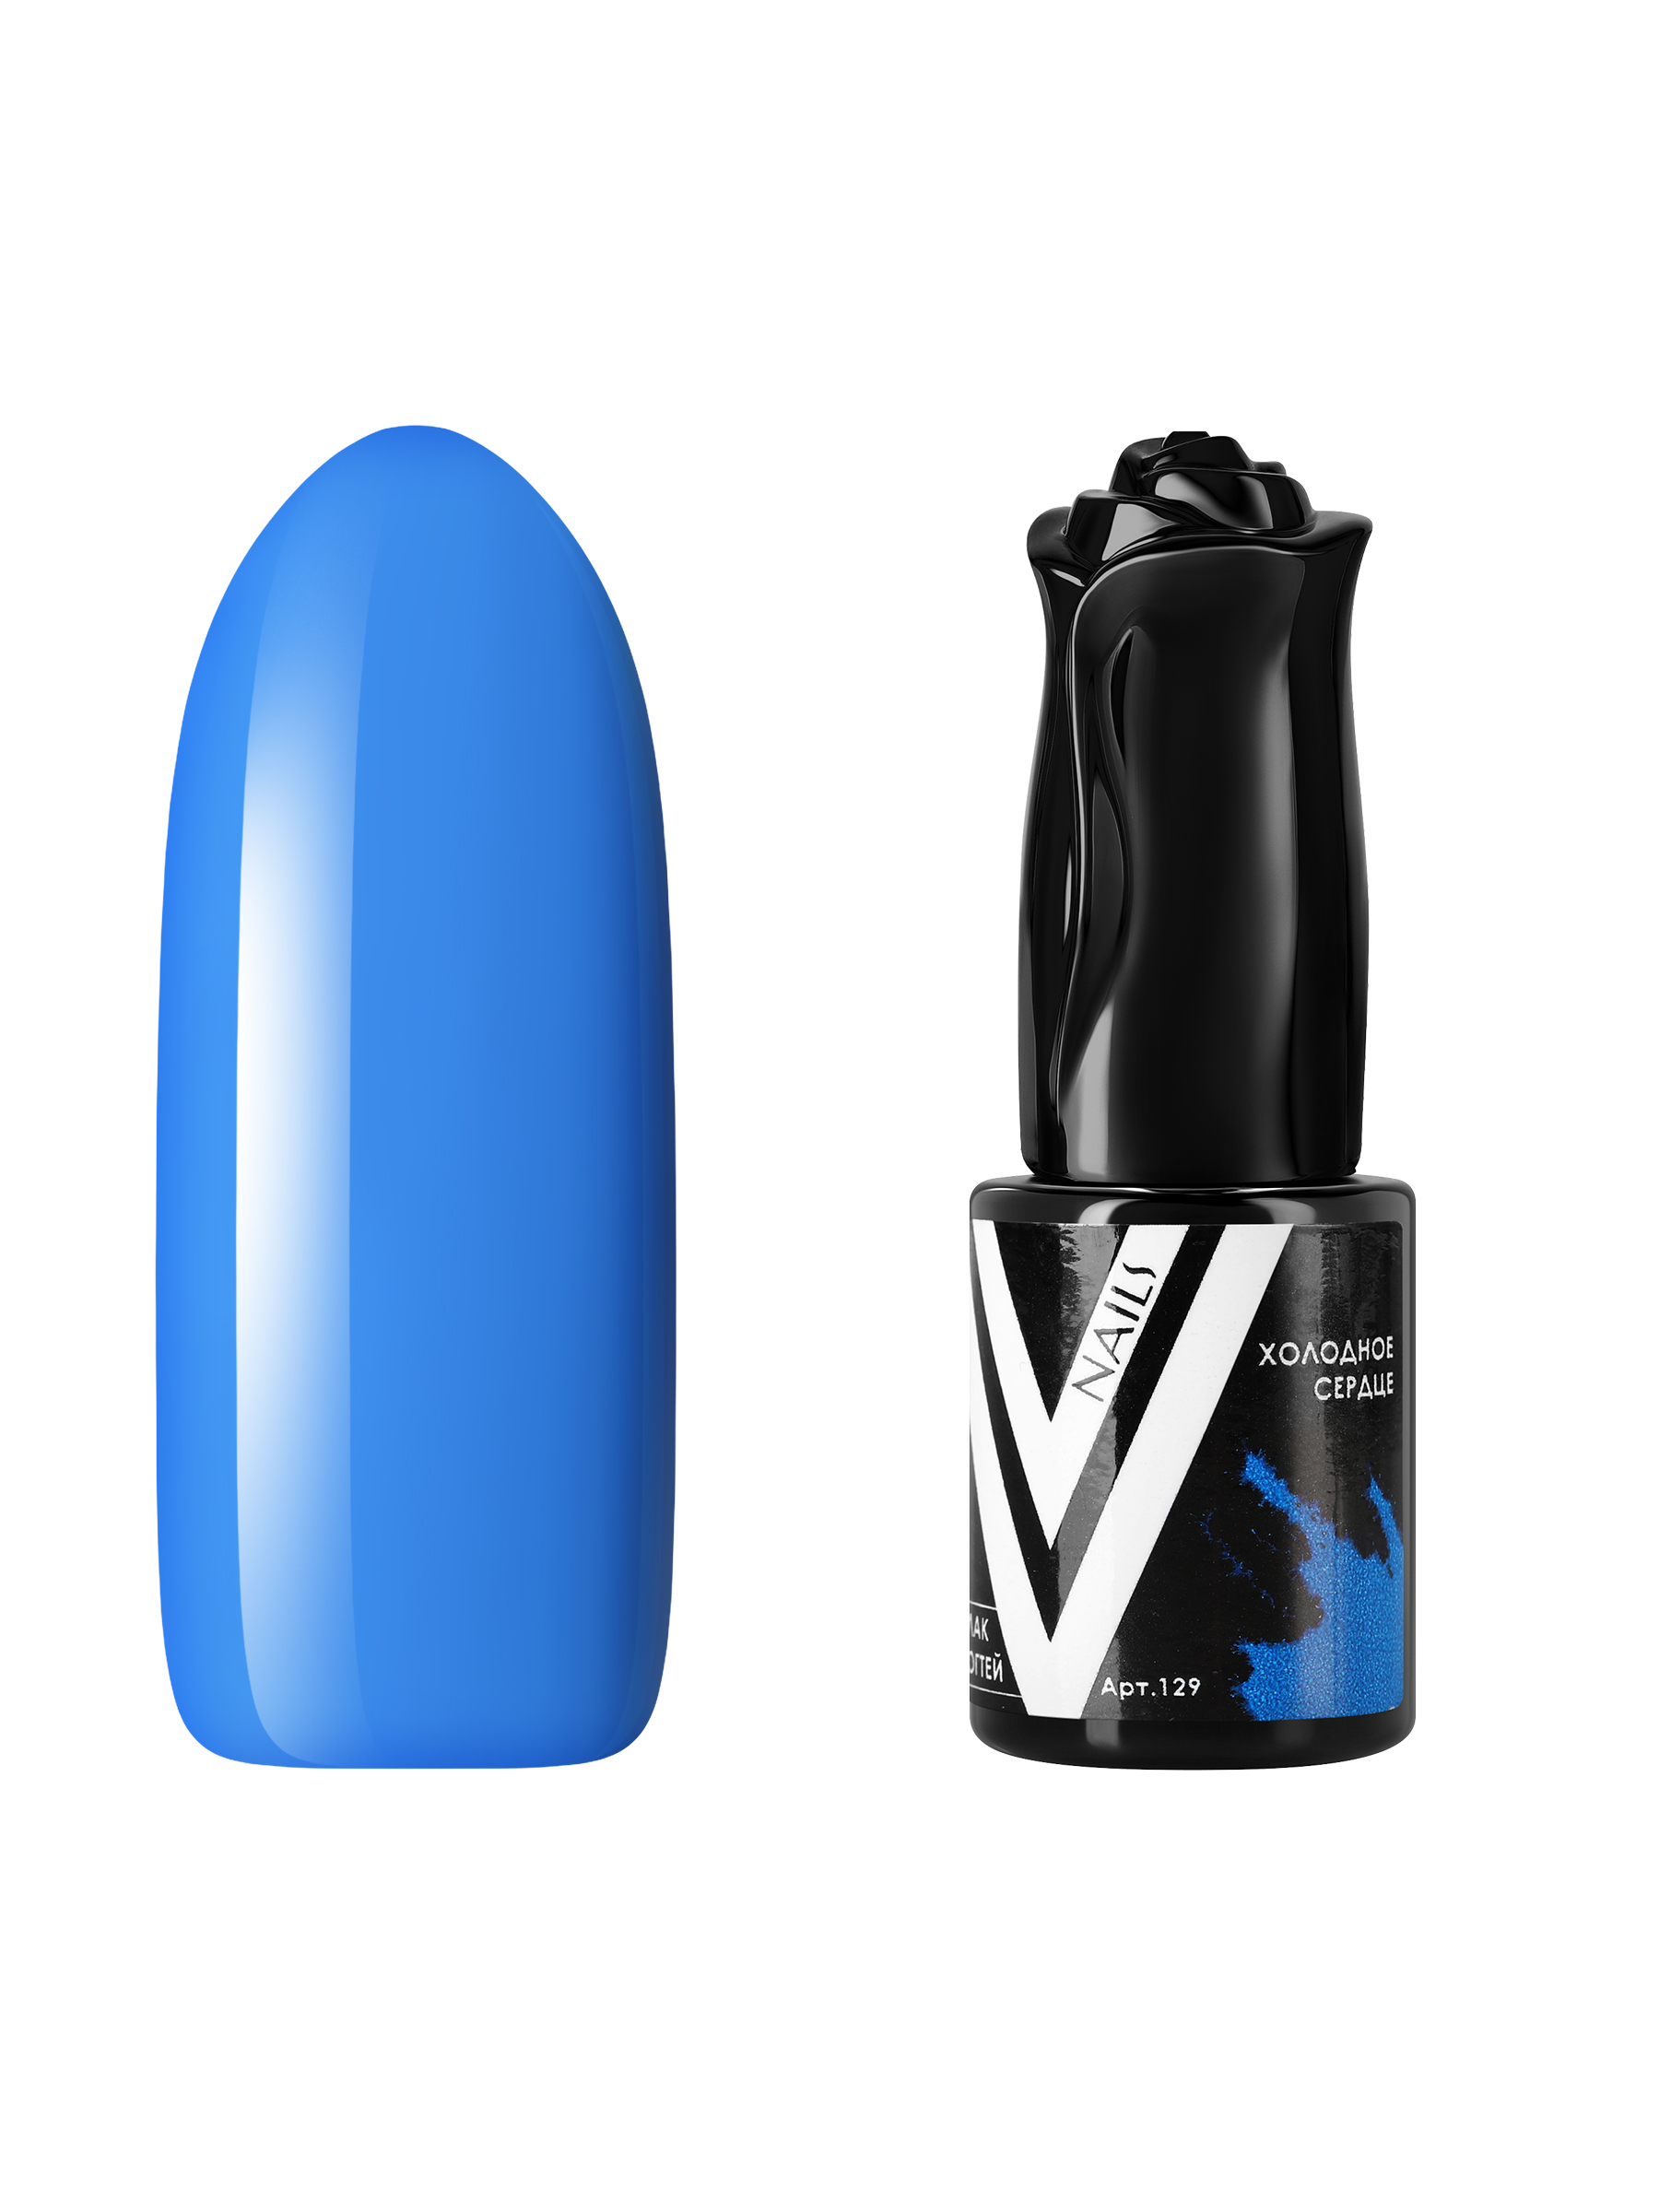 Гель-лак для ногтей Vogue Nails плотный самовыравнивающийся, яркий синий, 10 мл раскраска улыбка холодное сердце